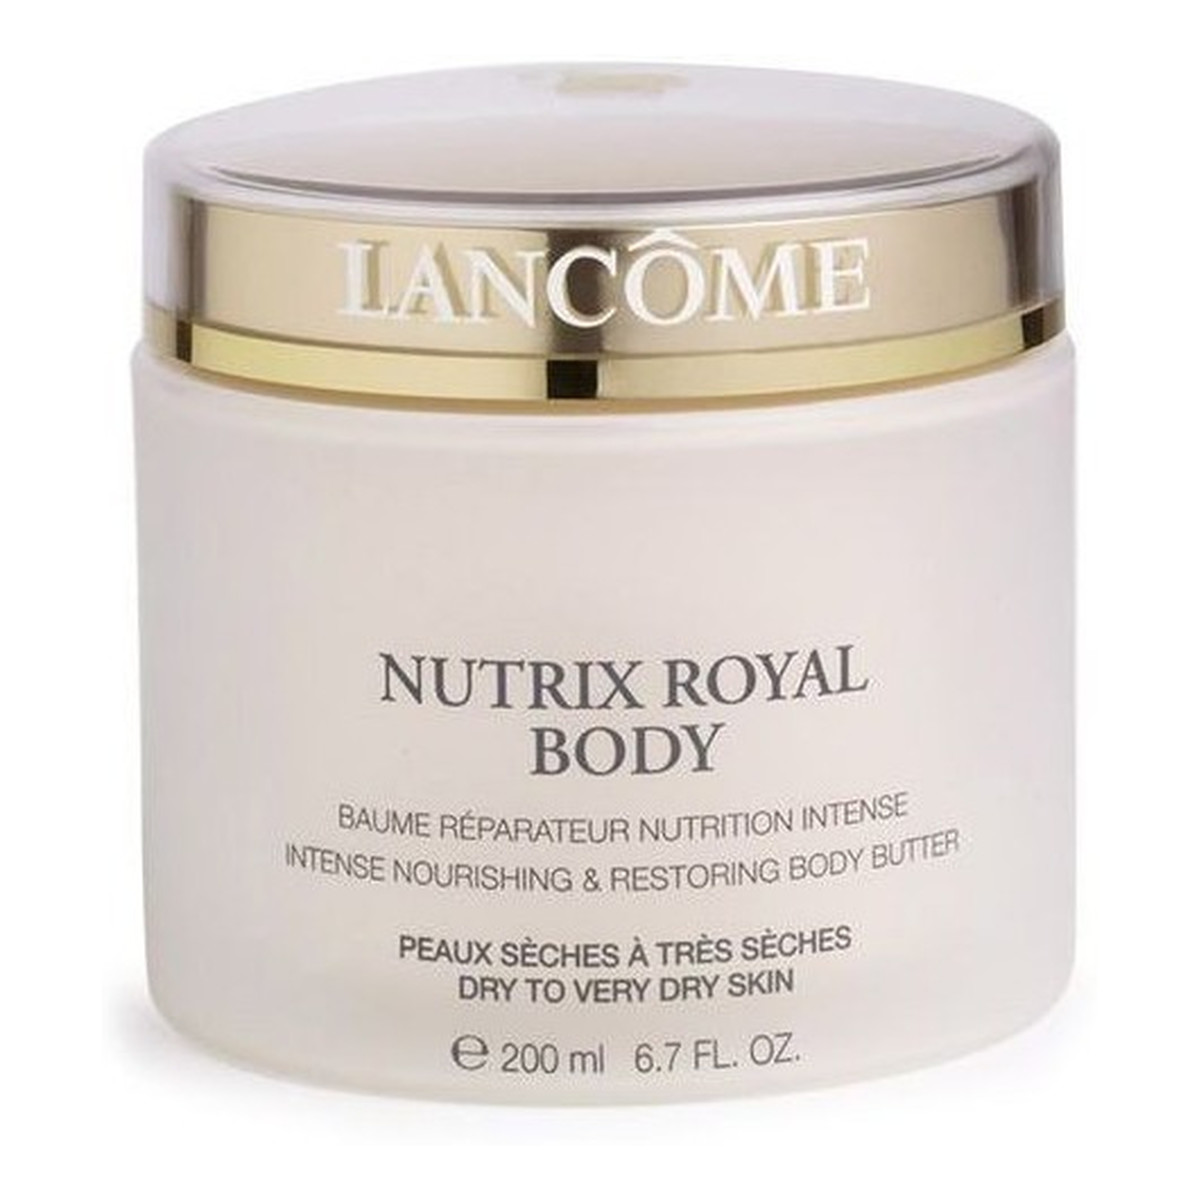 Lancome Nutrix Royal Body Odżywiający balsam do ciała do skóry suchej 200ml